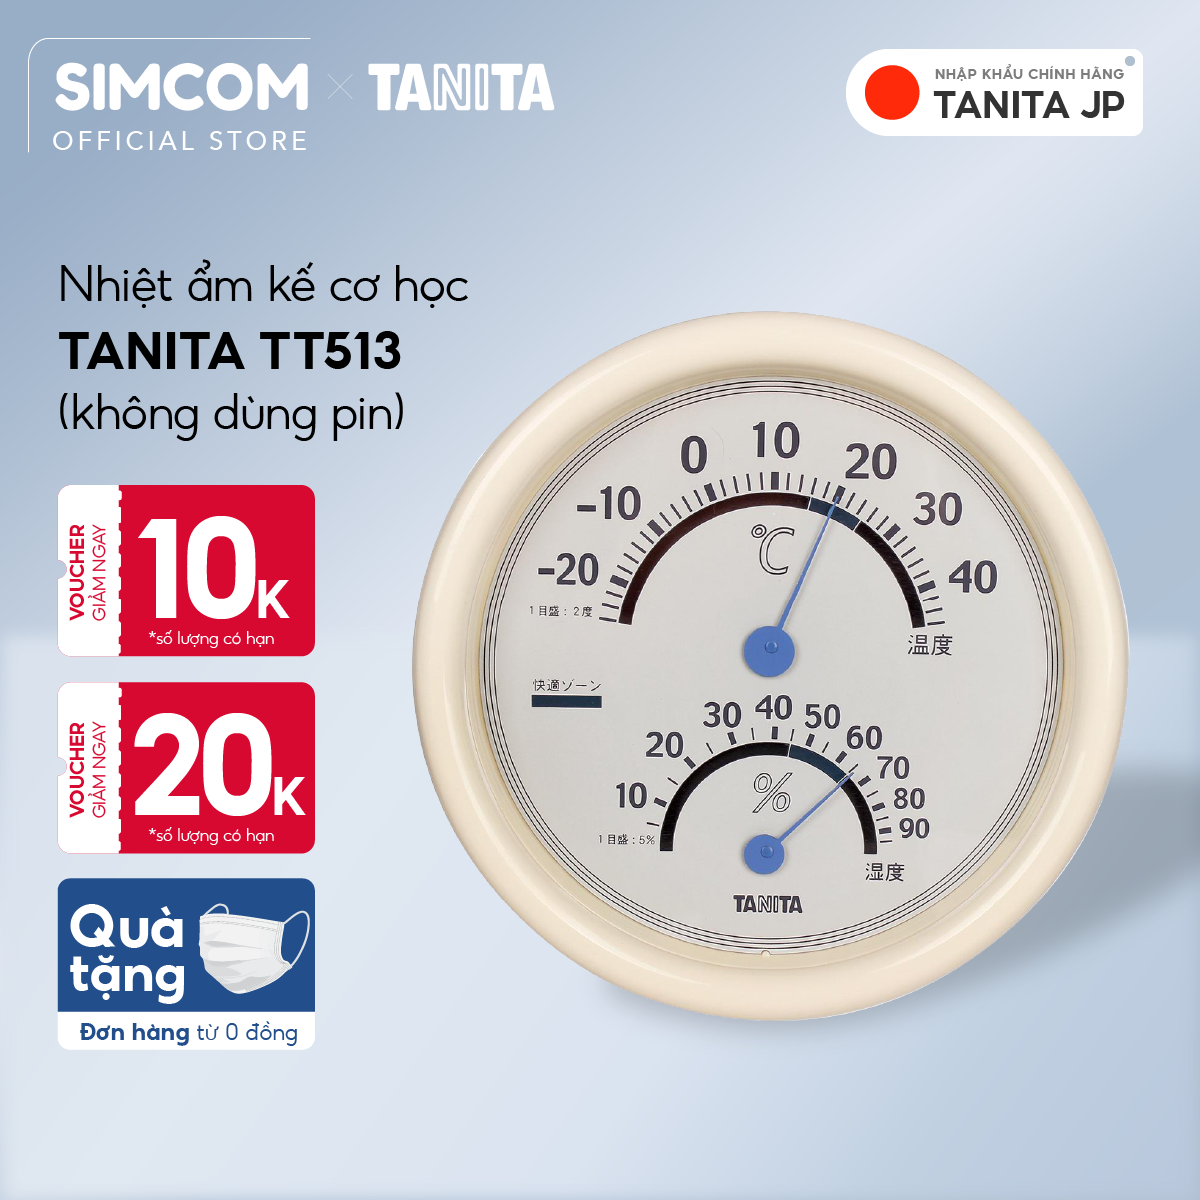 Nhiệt ẩm kế cơ học TANITA TT513 Chính hãng nhật bản,Nhiệt ẩm kế cơ